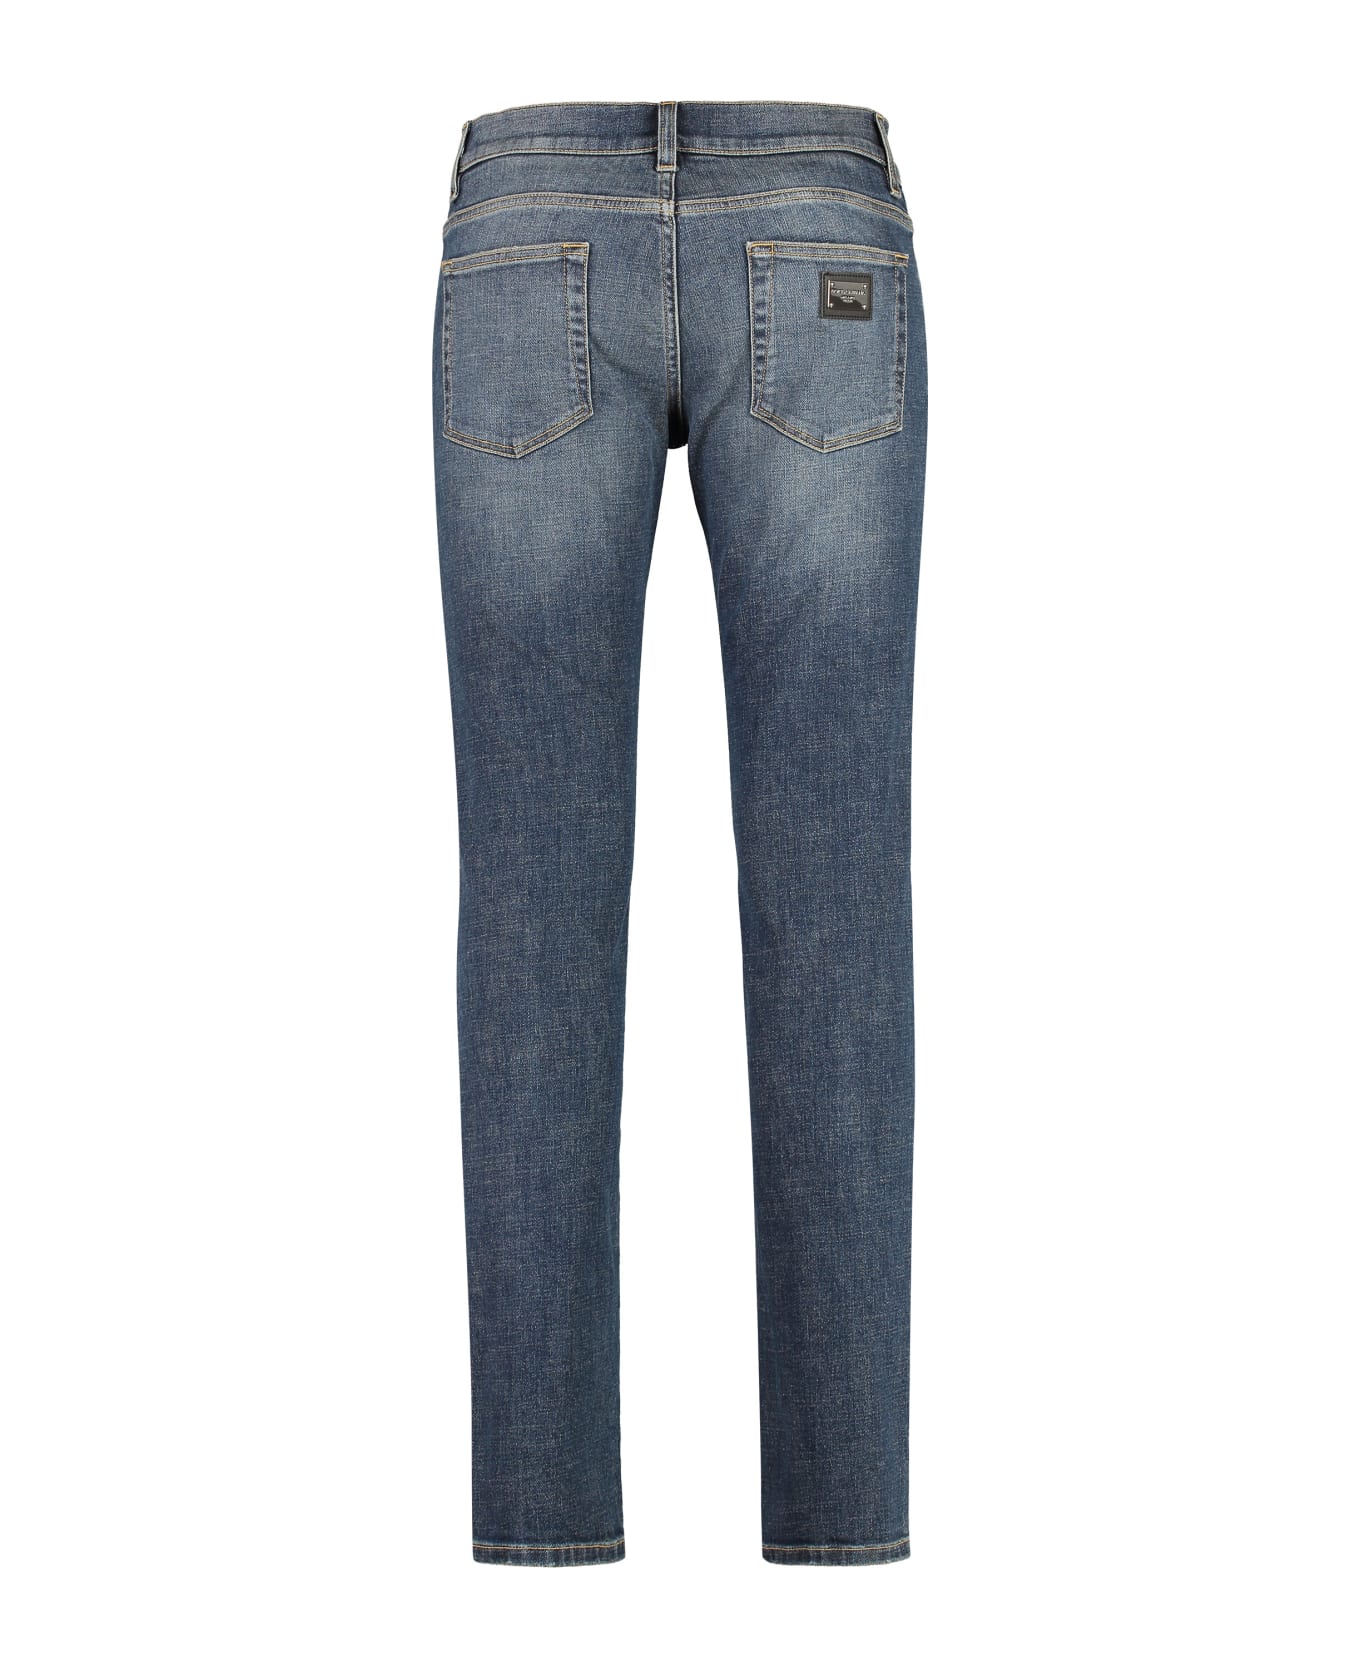 Dolce & Gabbana Stretch Skinny Jeans - Variante abbinata